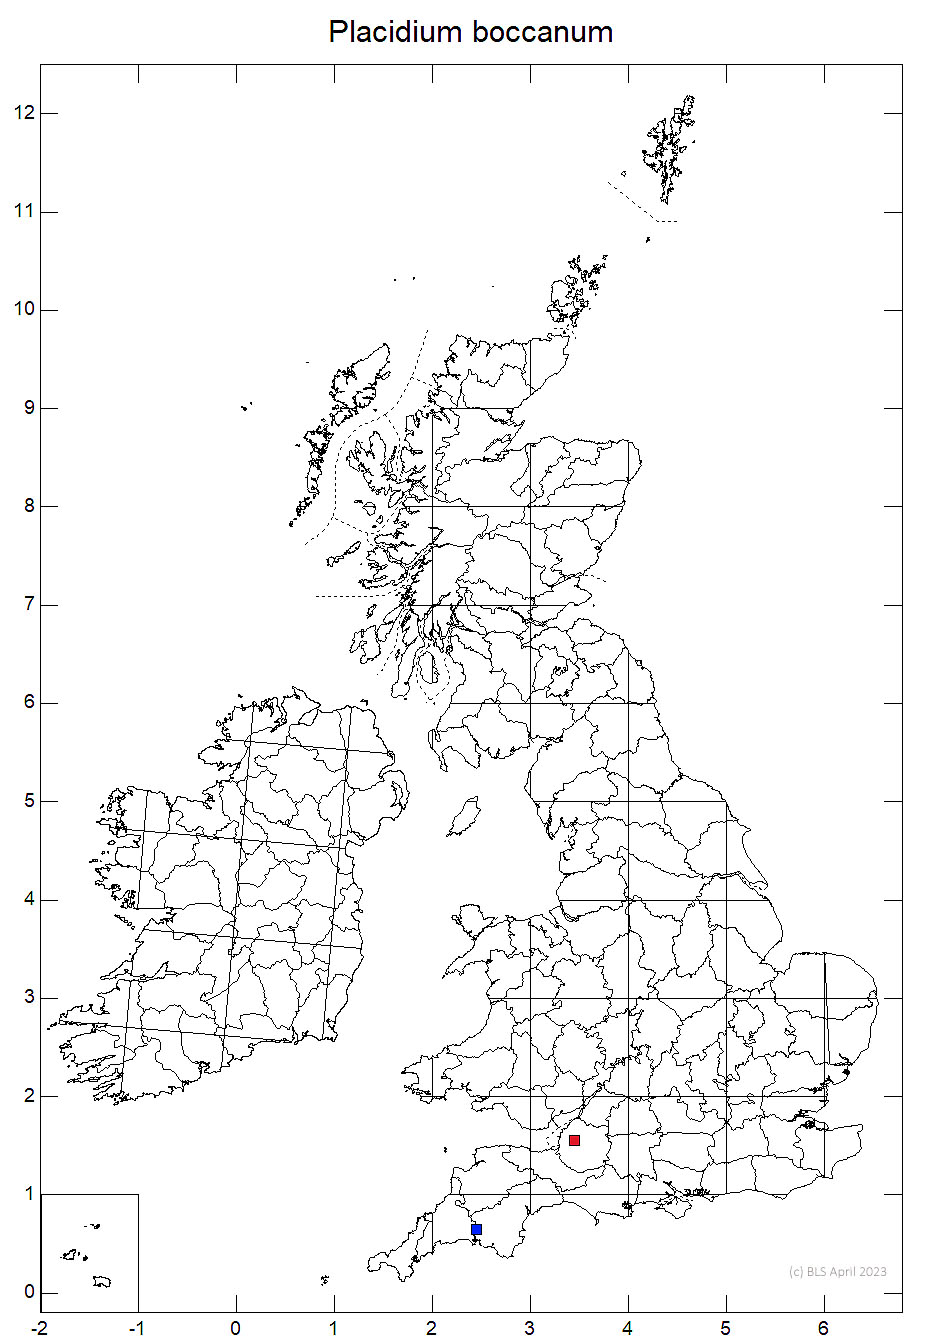 Placidium boccanum 10km sq distribution map